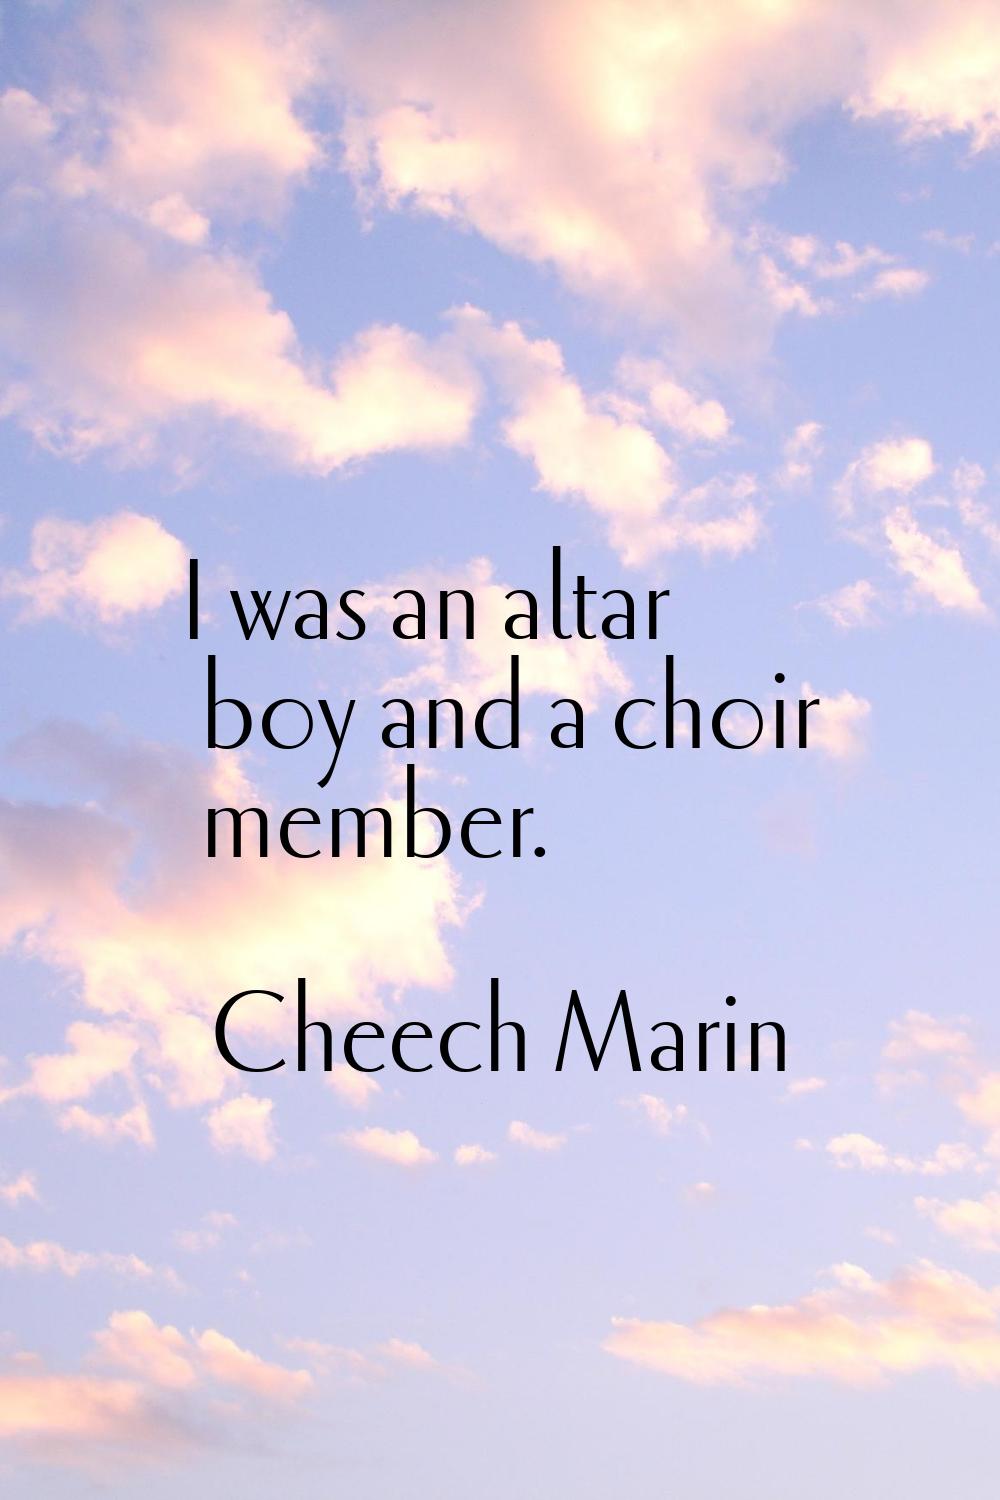 I was an altar boy and a choir member.